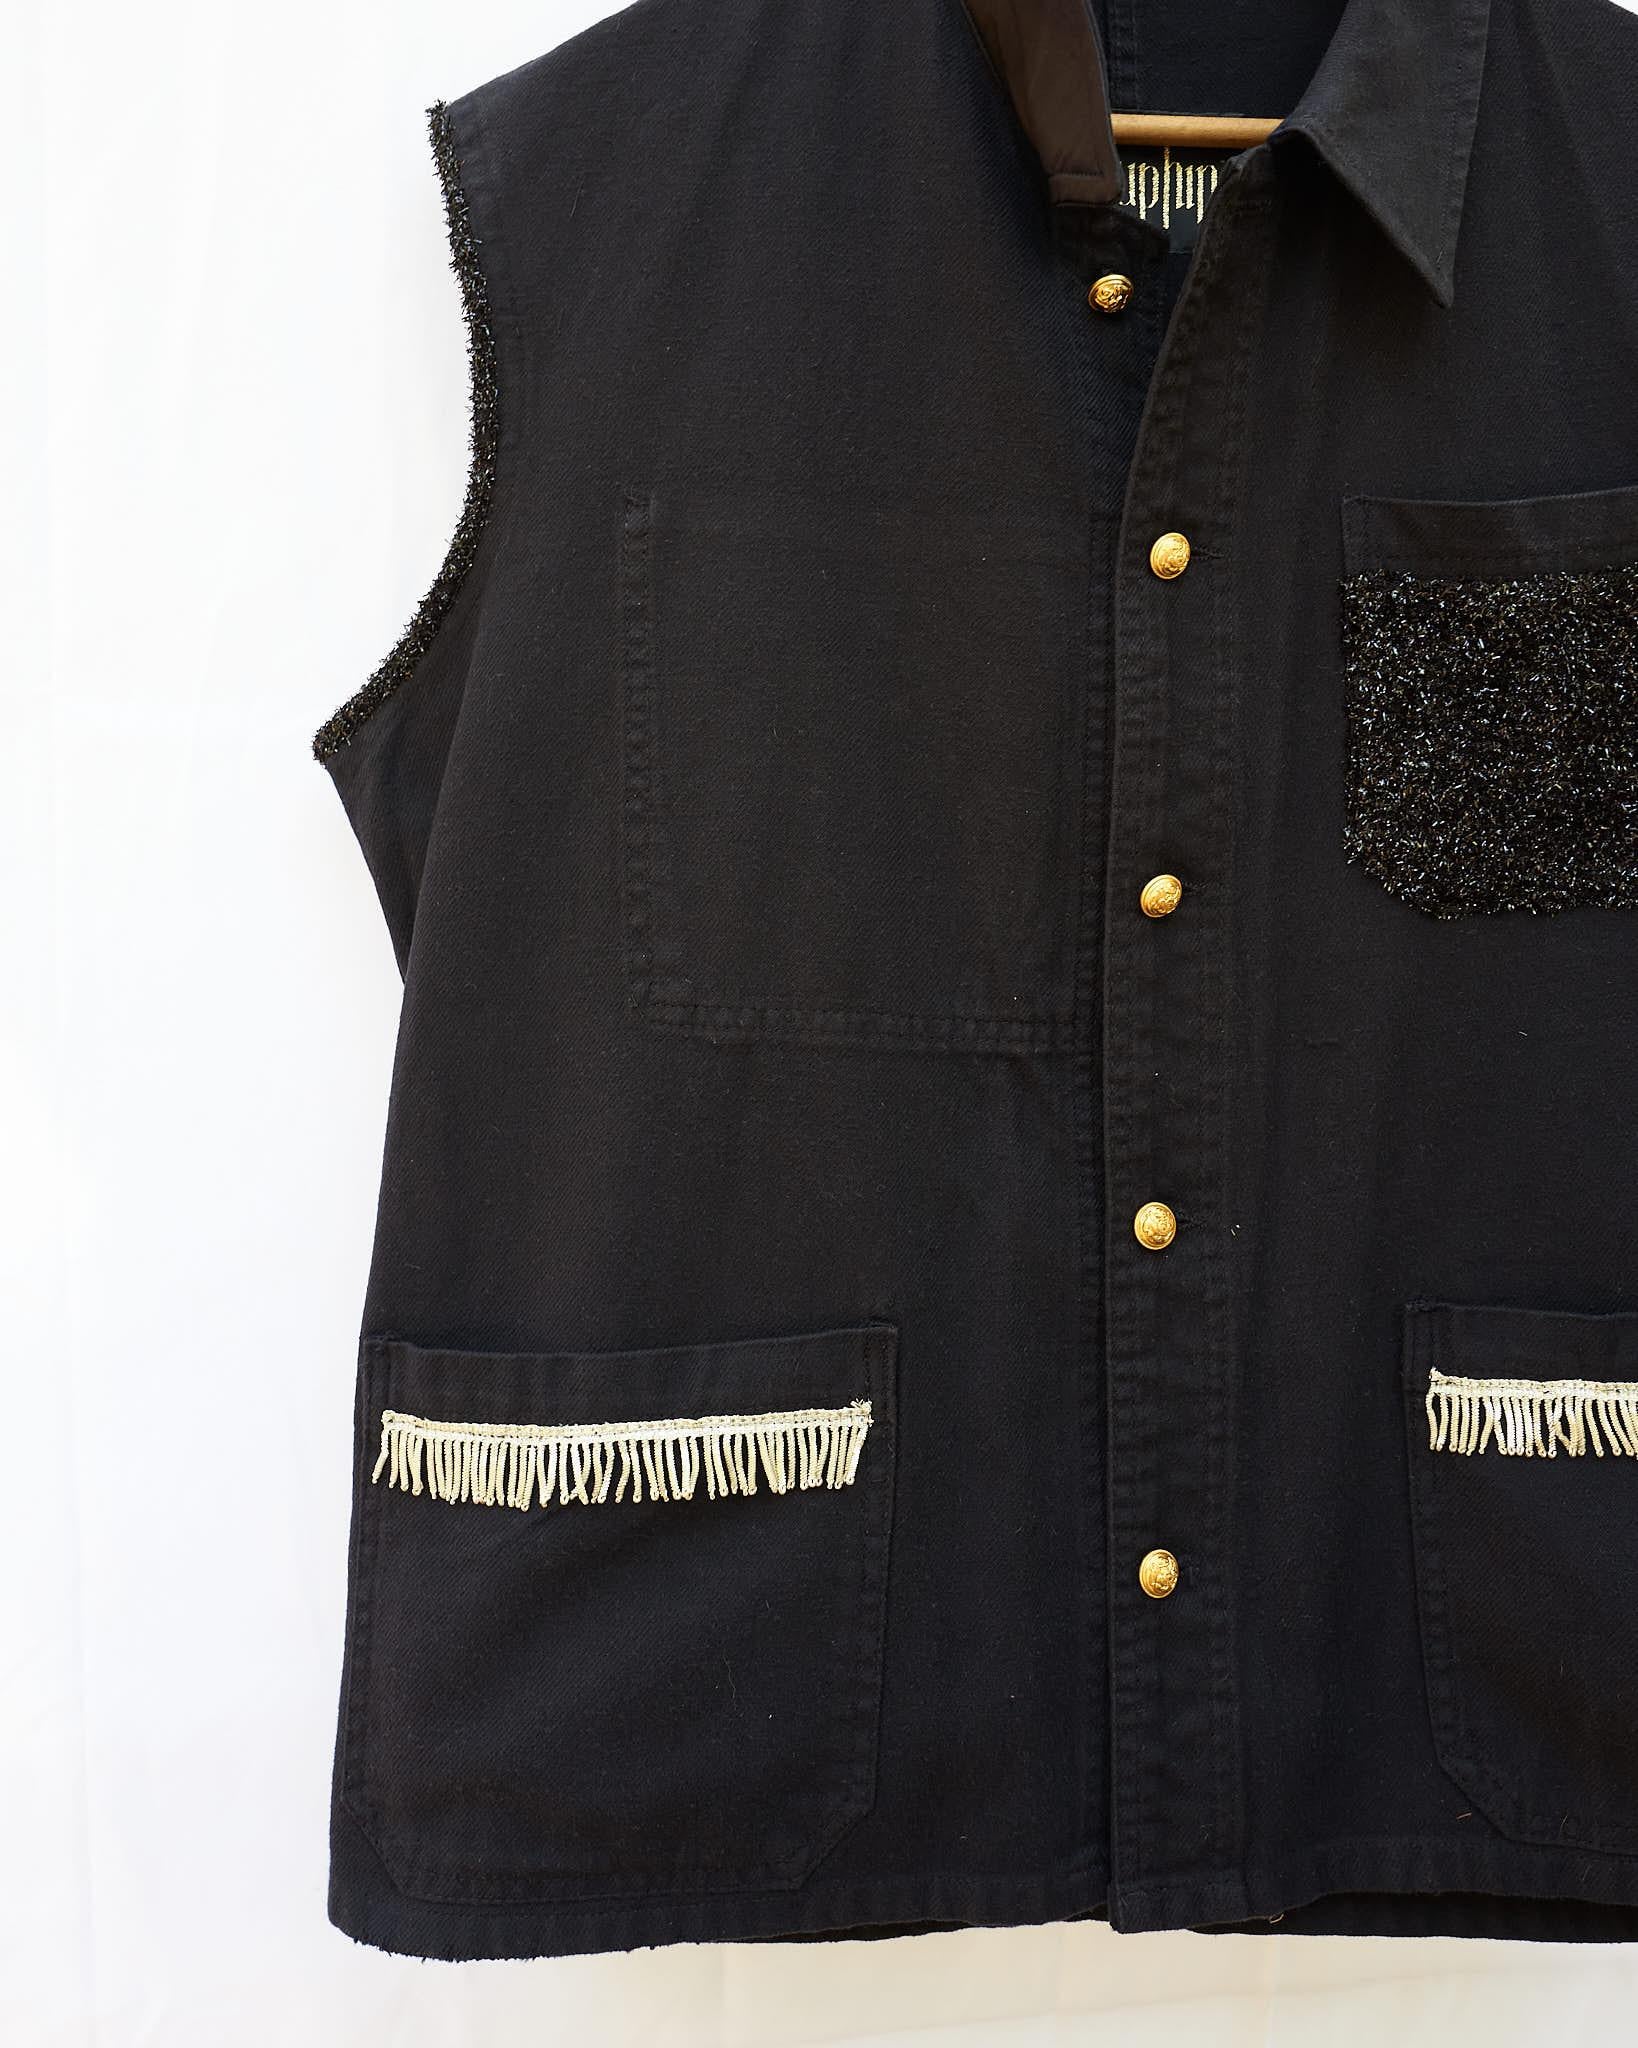 Women's Sleeveless Vest Jacket Black French Work Wear Fringe Embellished J Dauphin